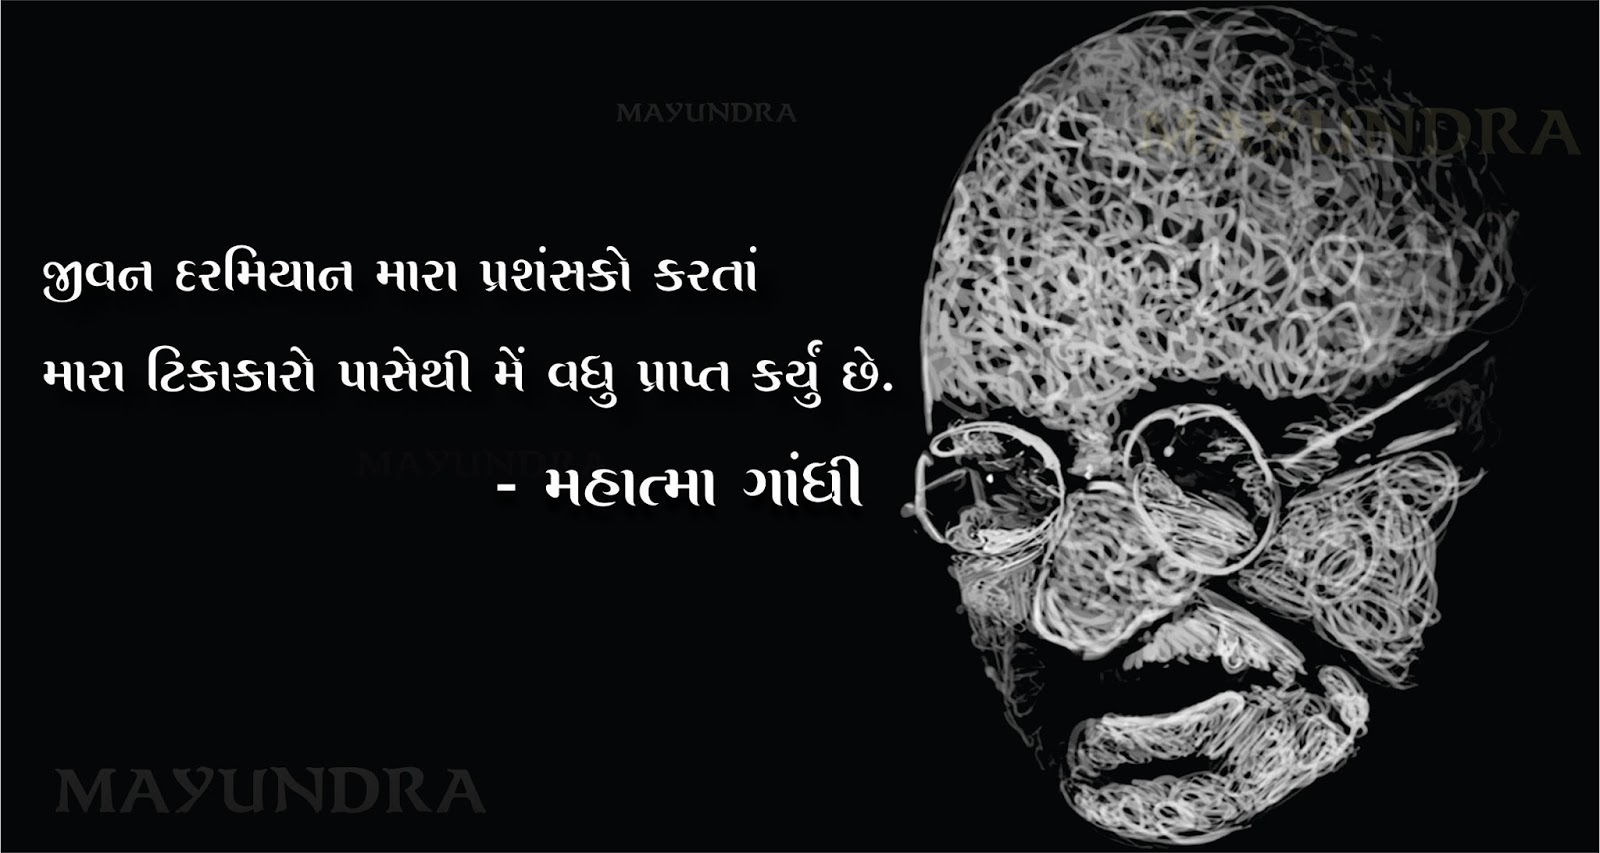 Gujarati Quotes Mahatma Gandhi Quotes India Quotes Health